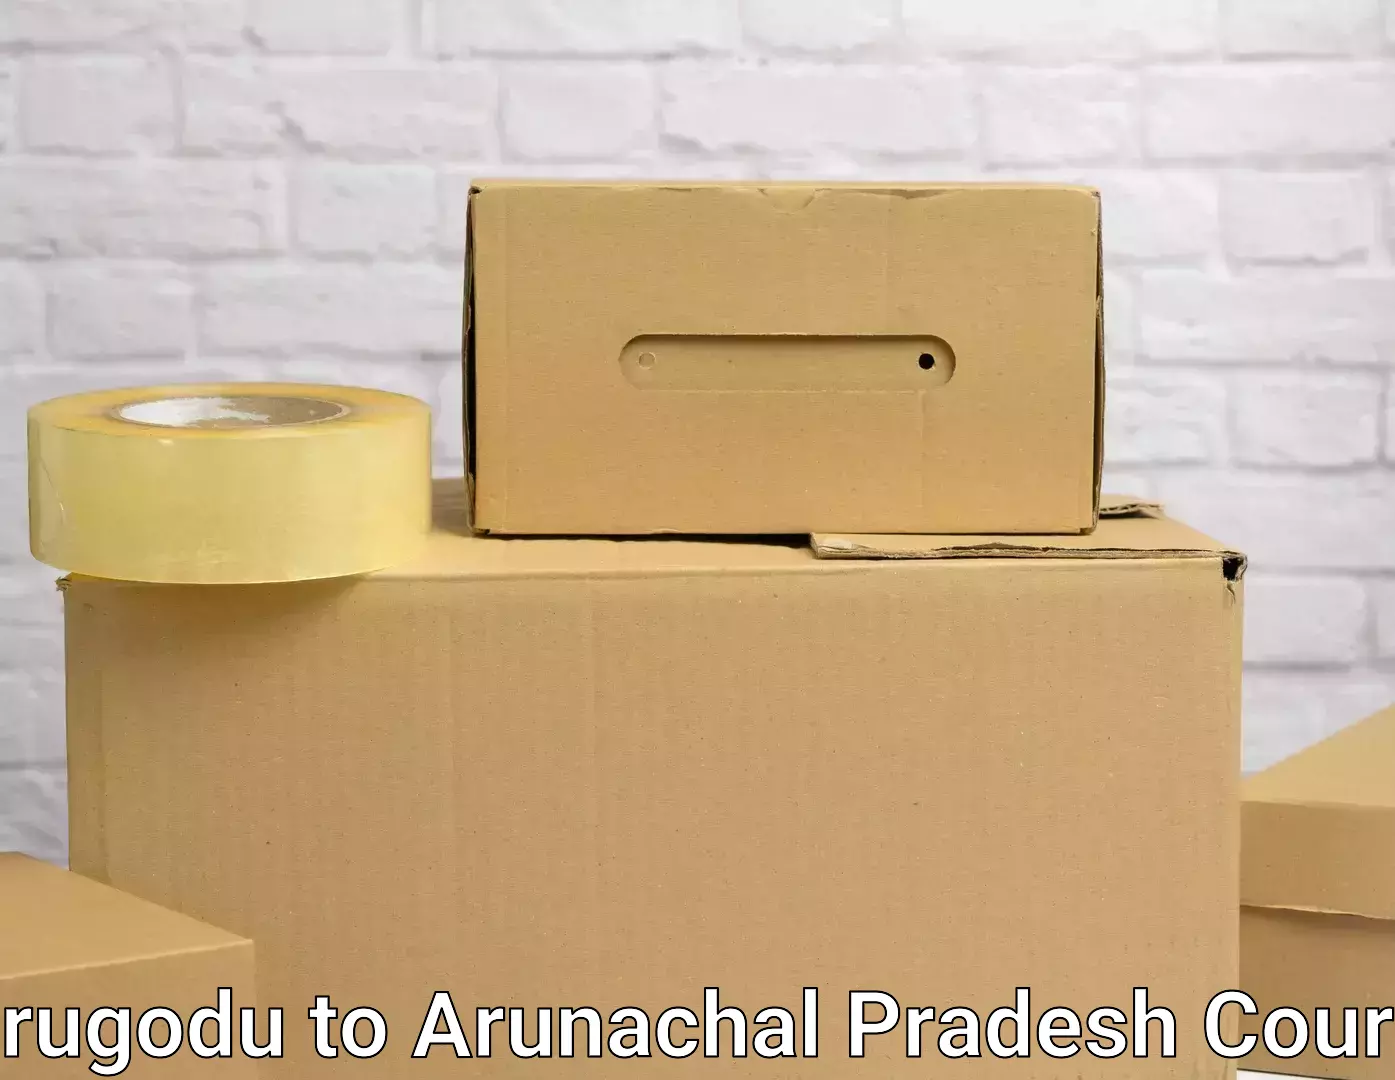 Professional household moving Kurugodu to Arunachal Pradesh